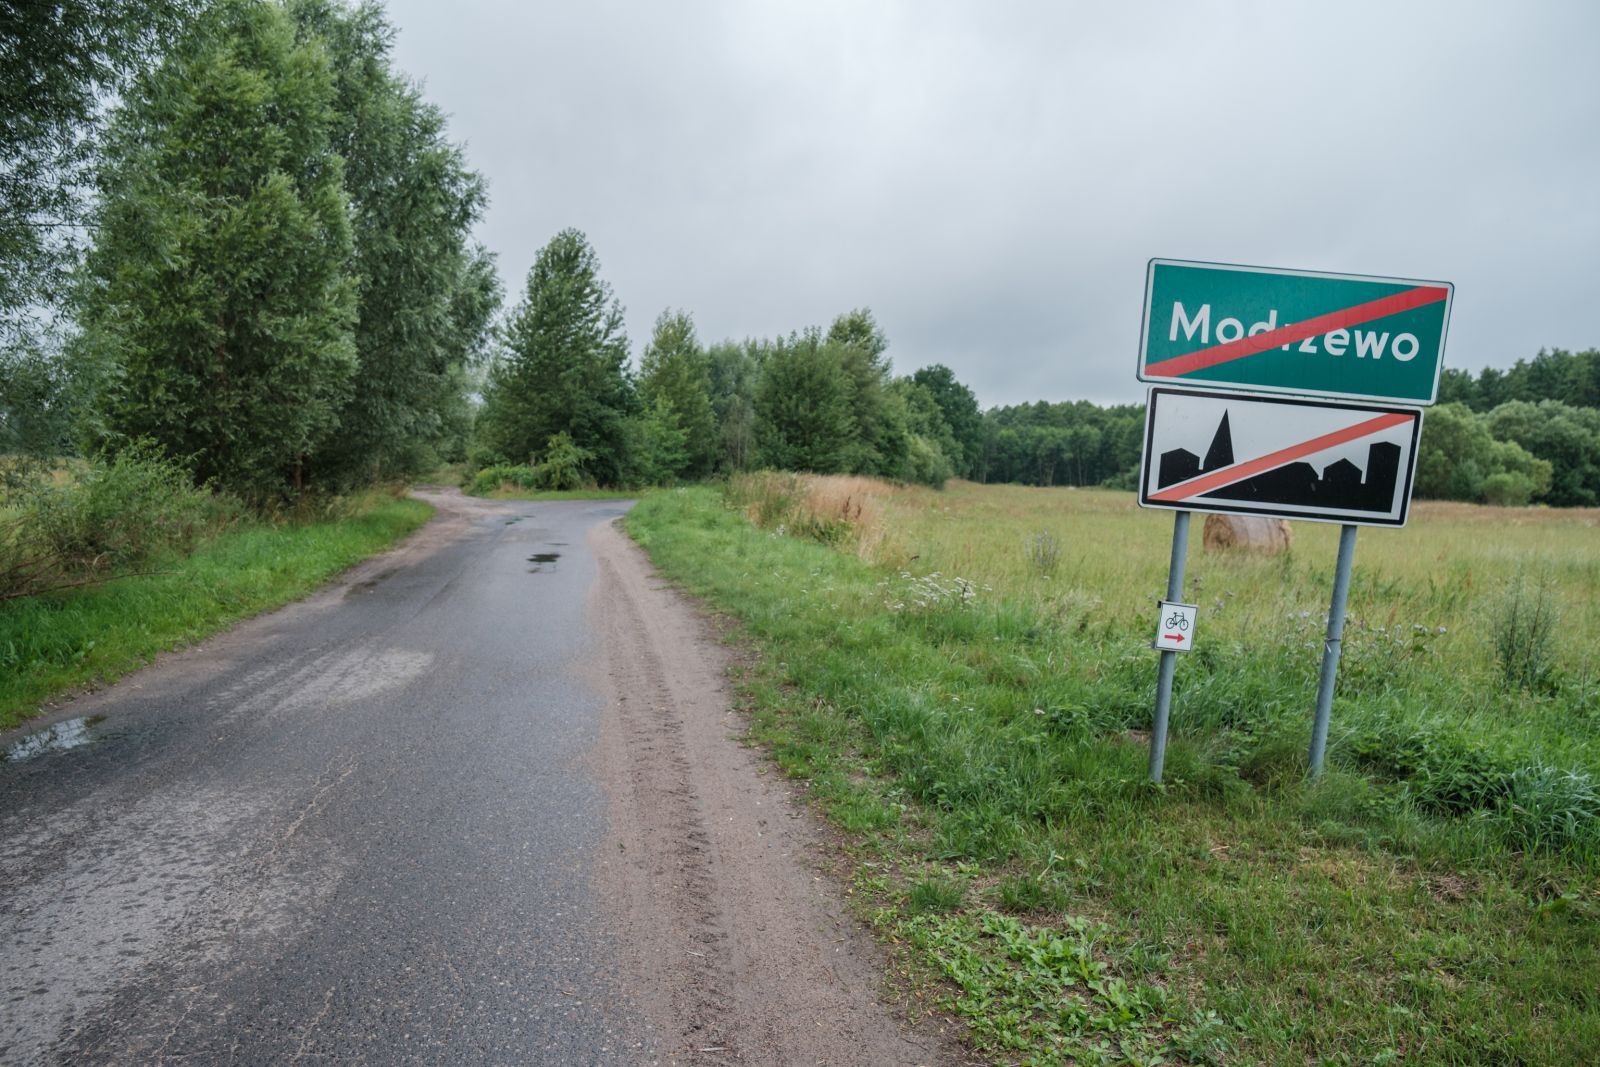 - 1737Z na odcinku od miejscowości Modrzewo w GMINIE SUCHAŃ w kierunku miejscowości Tarnowo